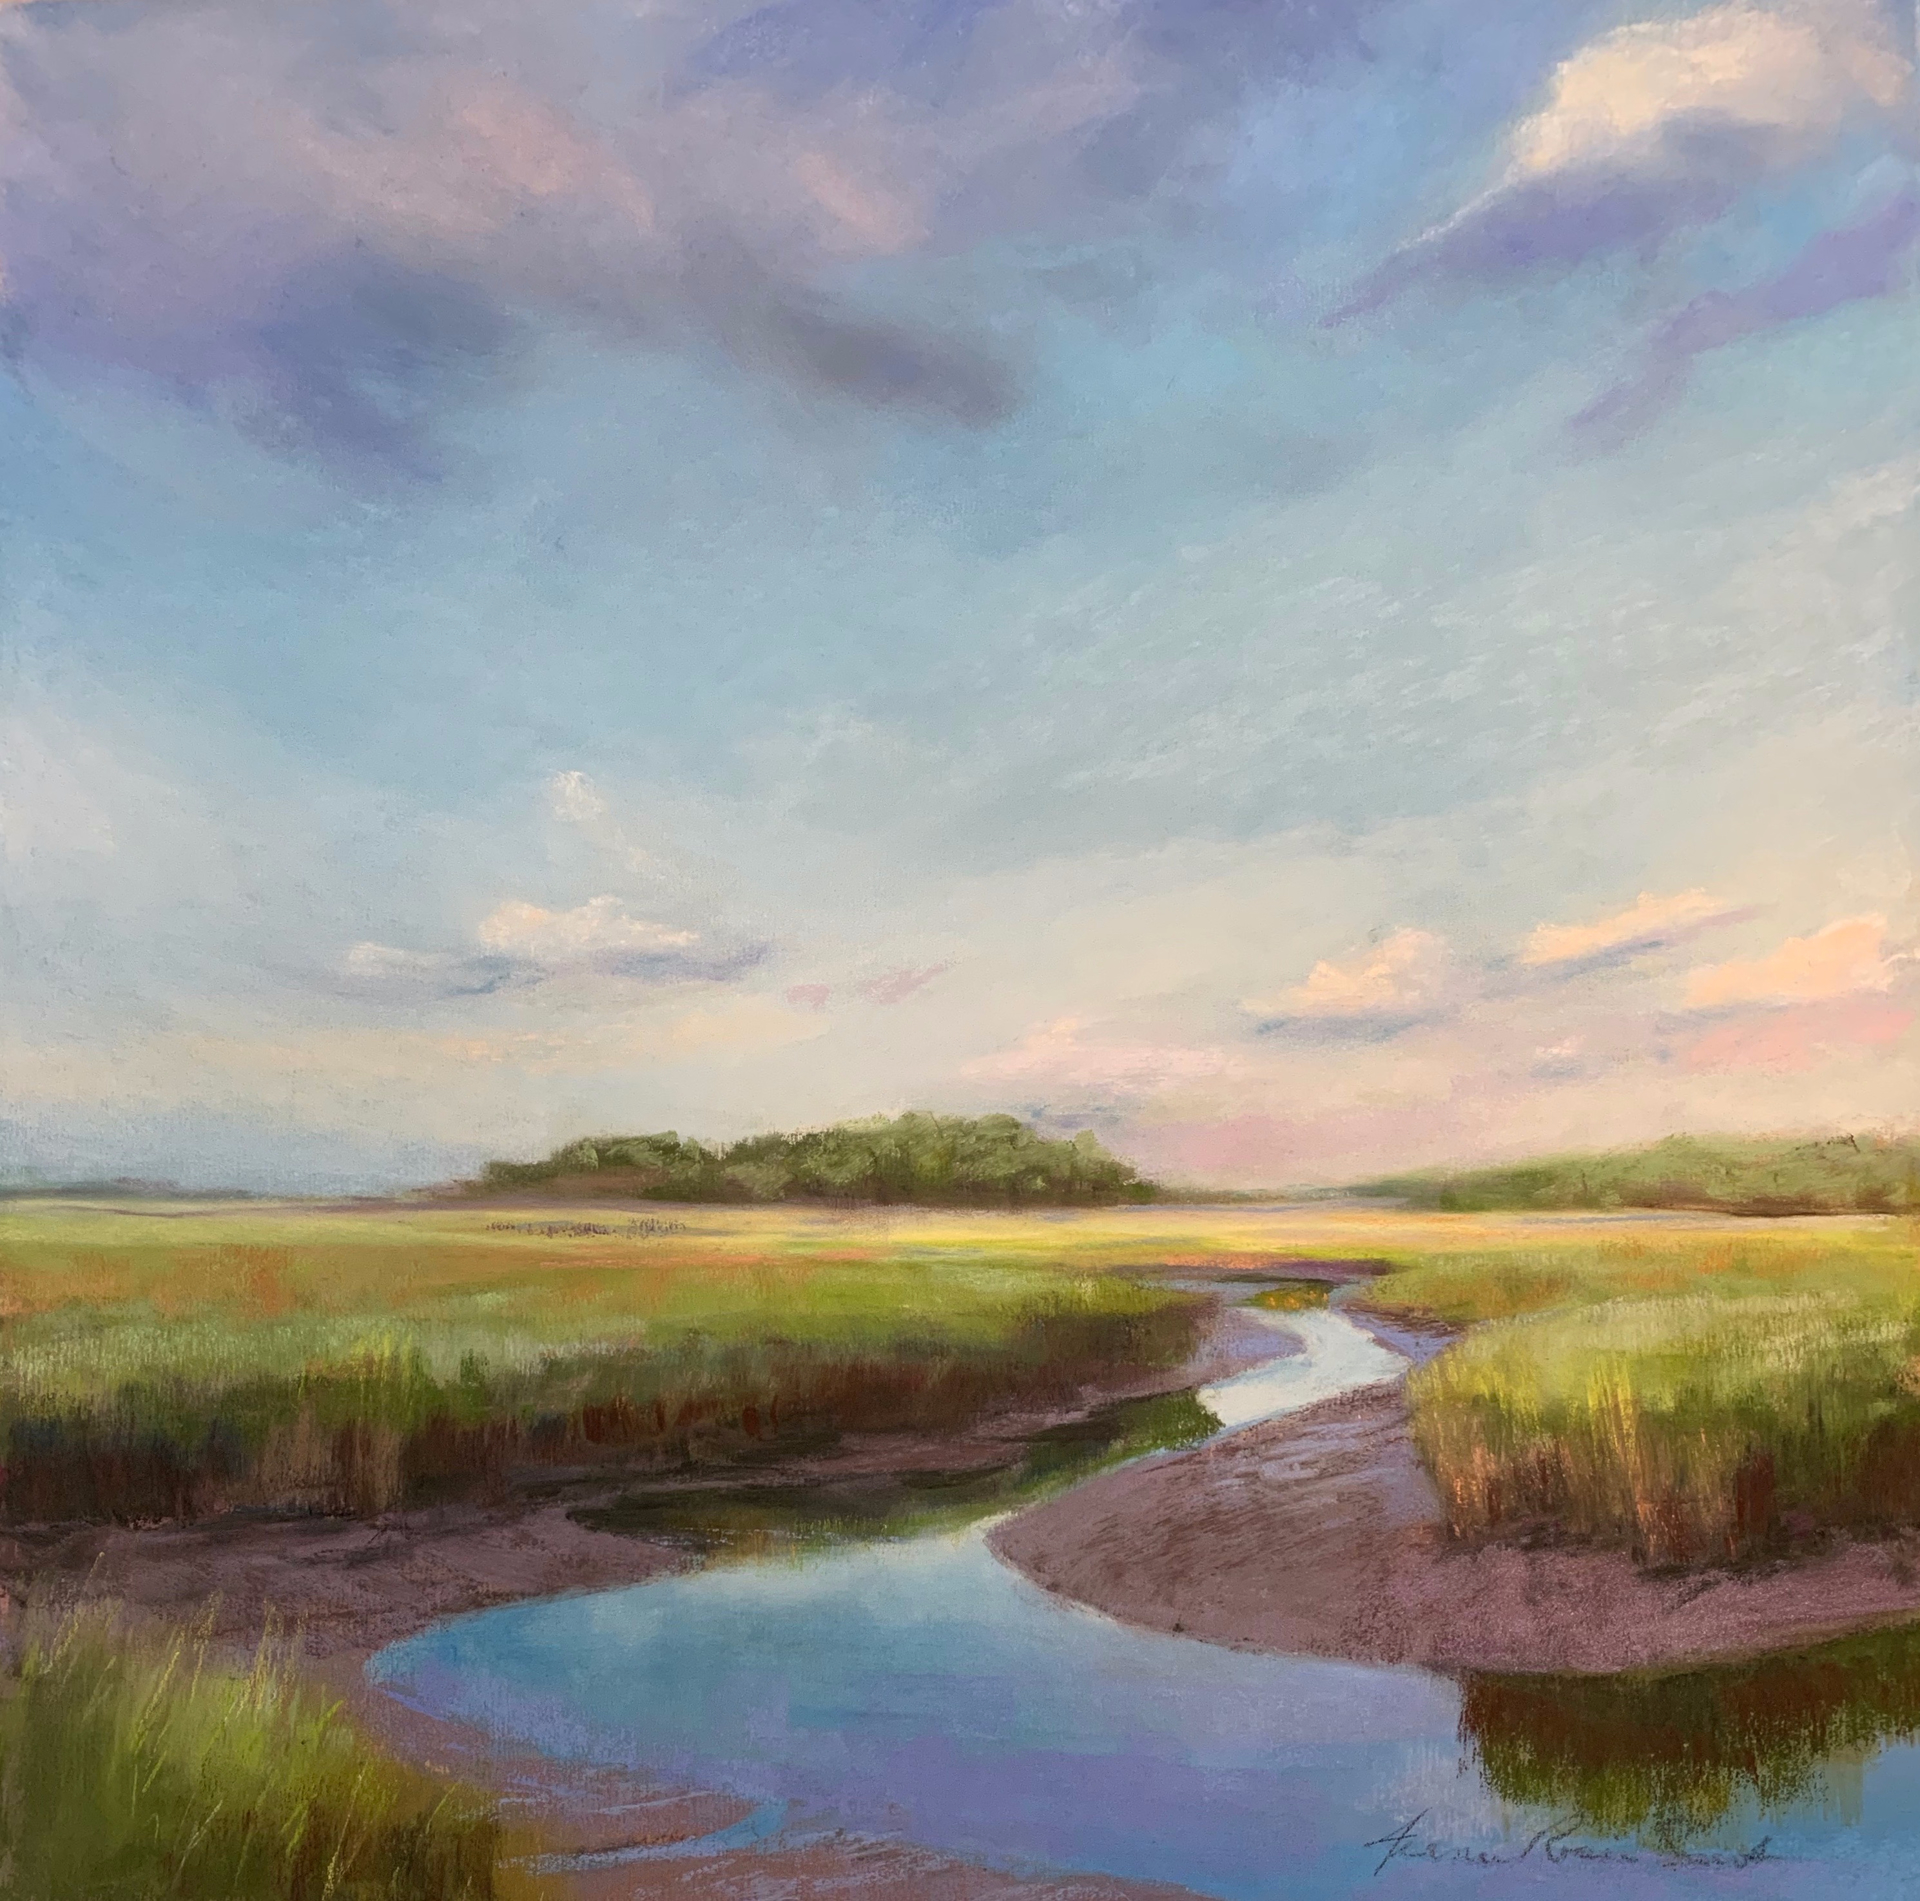 Marsh Peace by Jeanne Rosier Smith